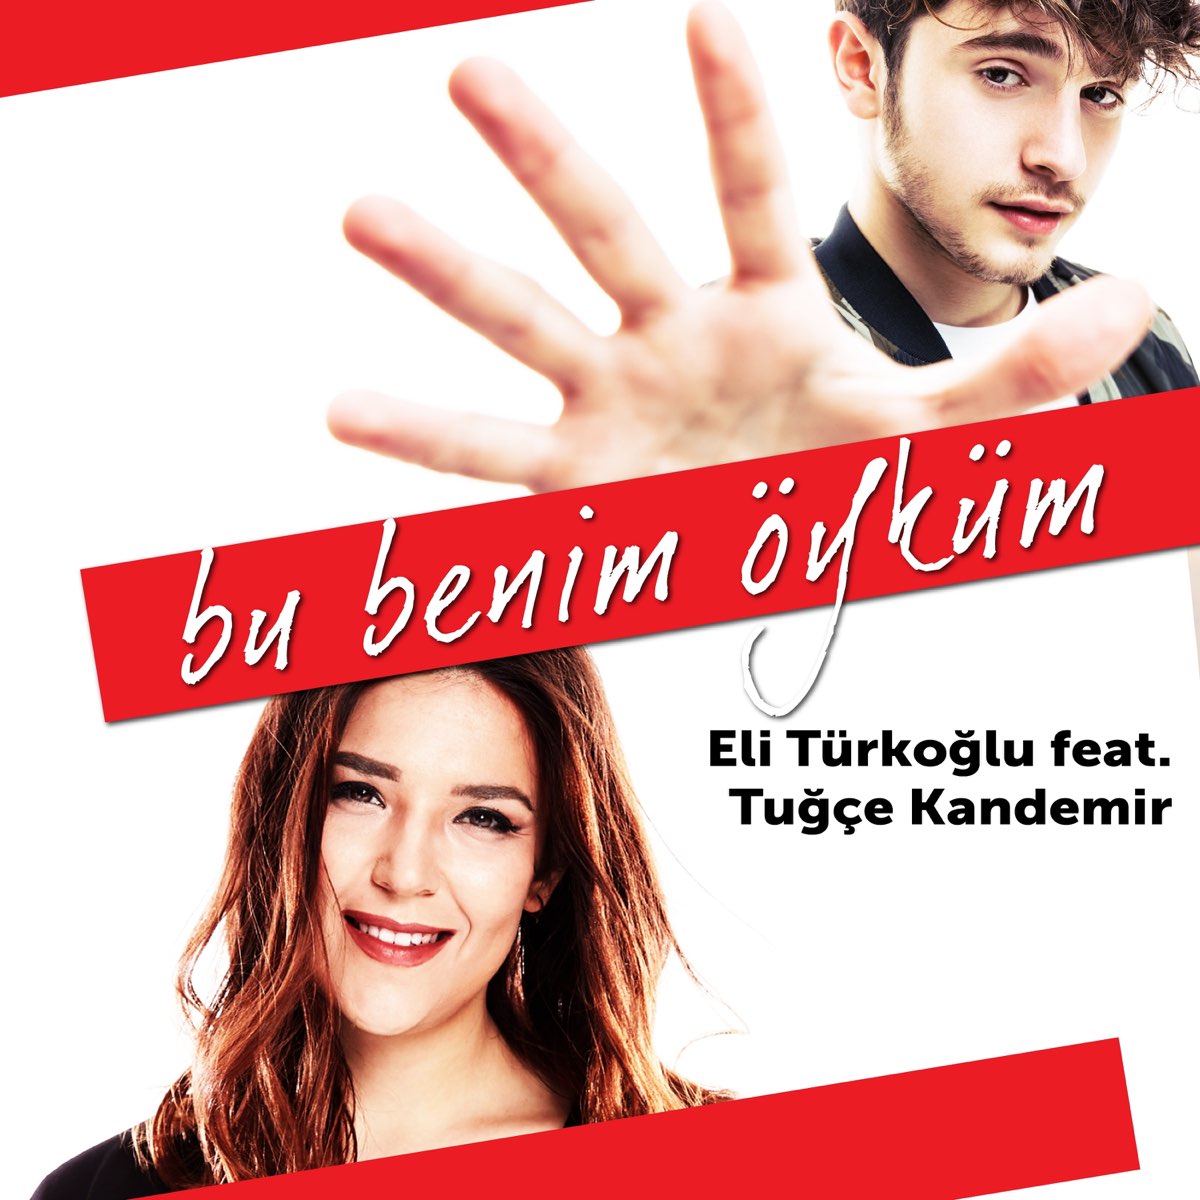 Bu Benim Öyküm (feat. Tuğçe Kandemir) - Single - Album by Eli Türkoğlu -  Apple Music